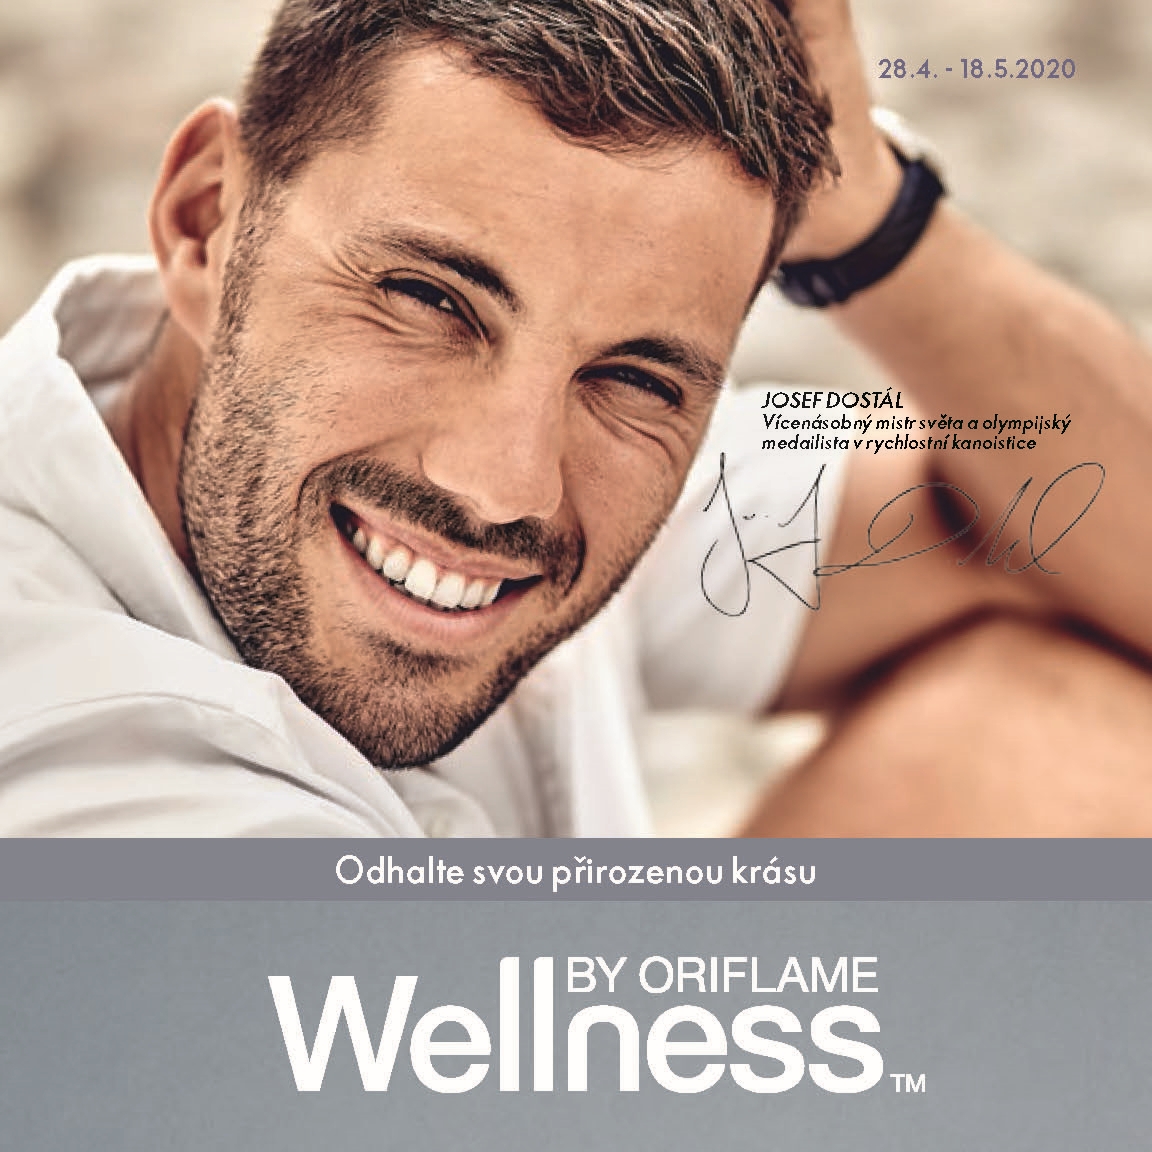 Oriflame katalog Wellness oriflame.cz www.oriflame.cz